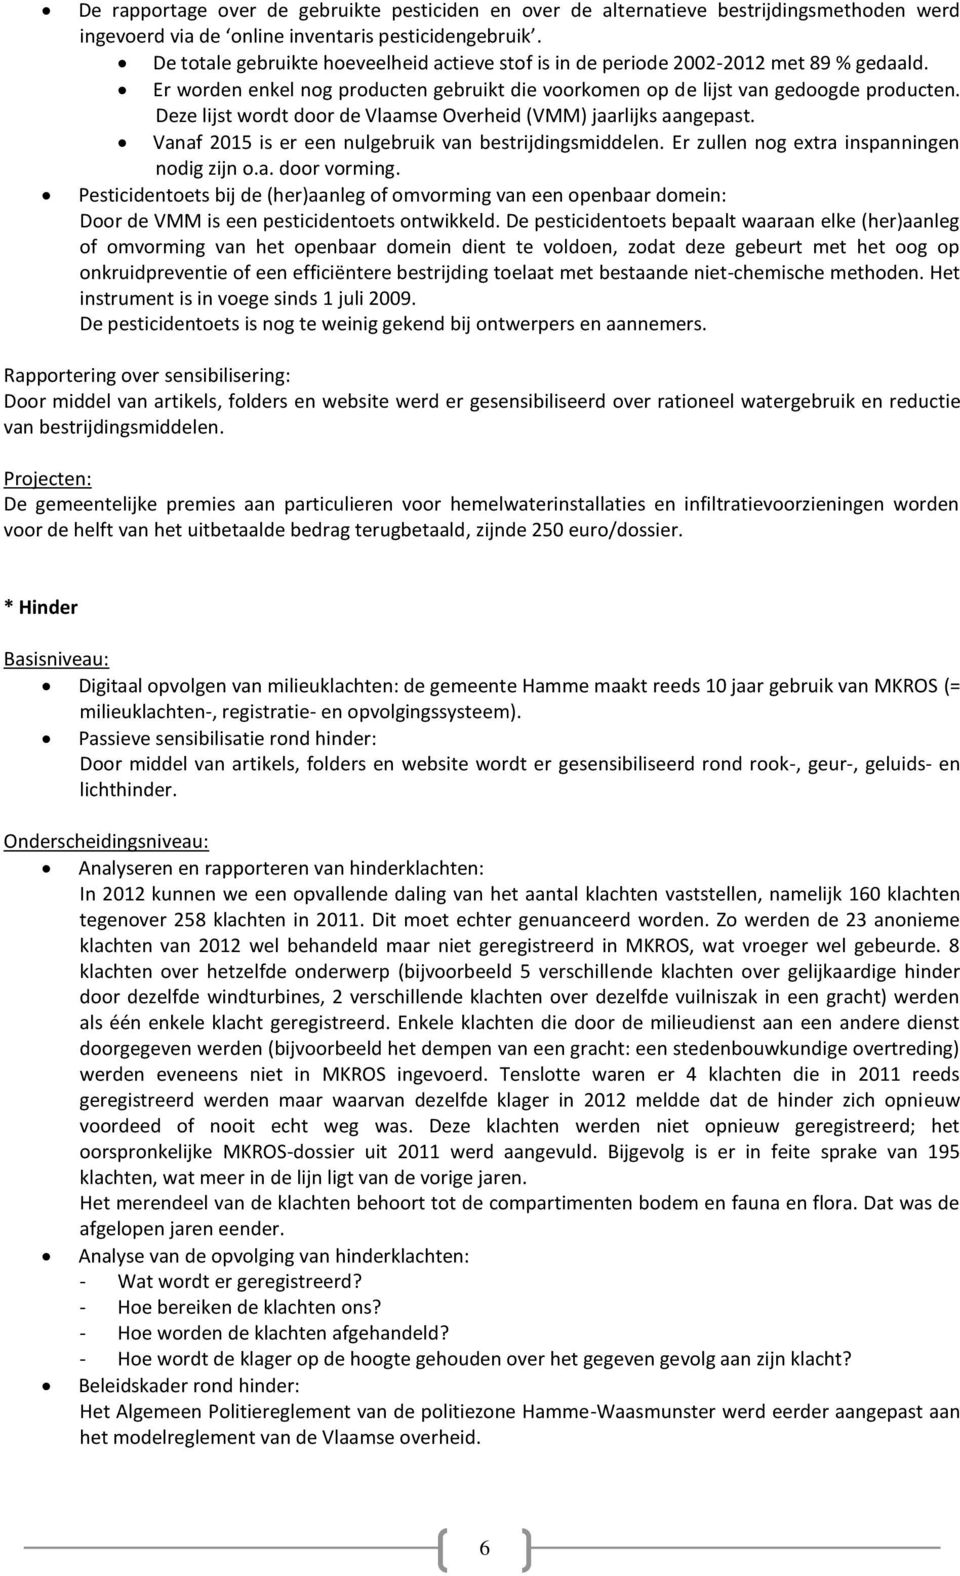 Deze lijst wordt door de Vlaamse Overheid (VMM) jaarlijks aangepast. Vanaf 2015 is er een nulgebruik van bestrijdingsmiddelen. Er zullen nog extra inspanningen nodig zijn o.a. door vorming.